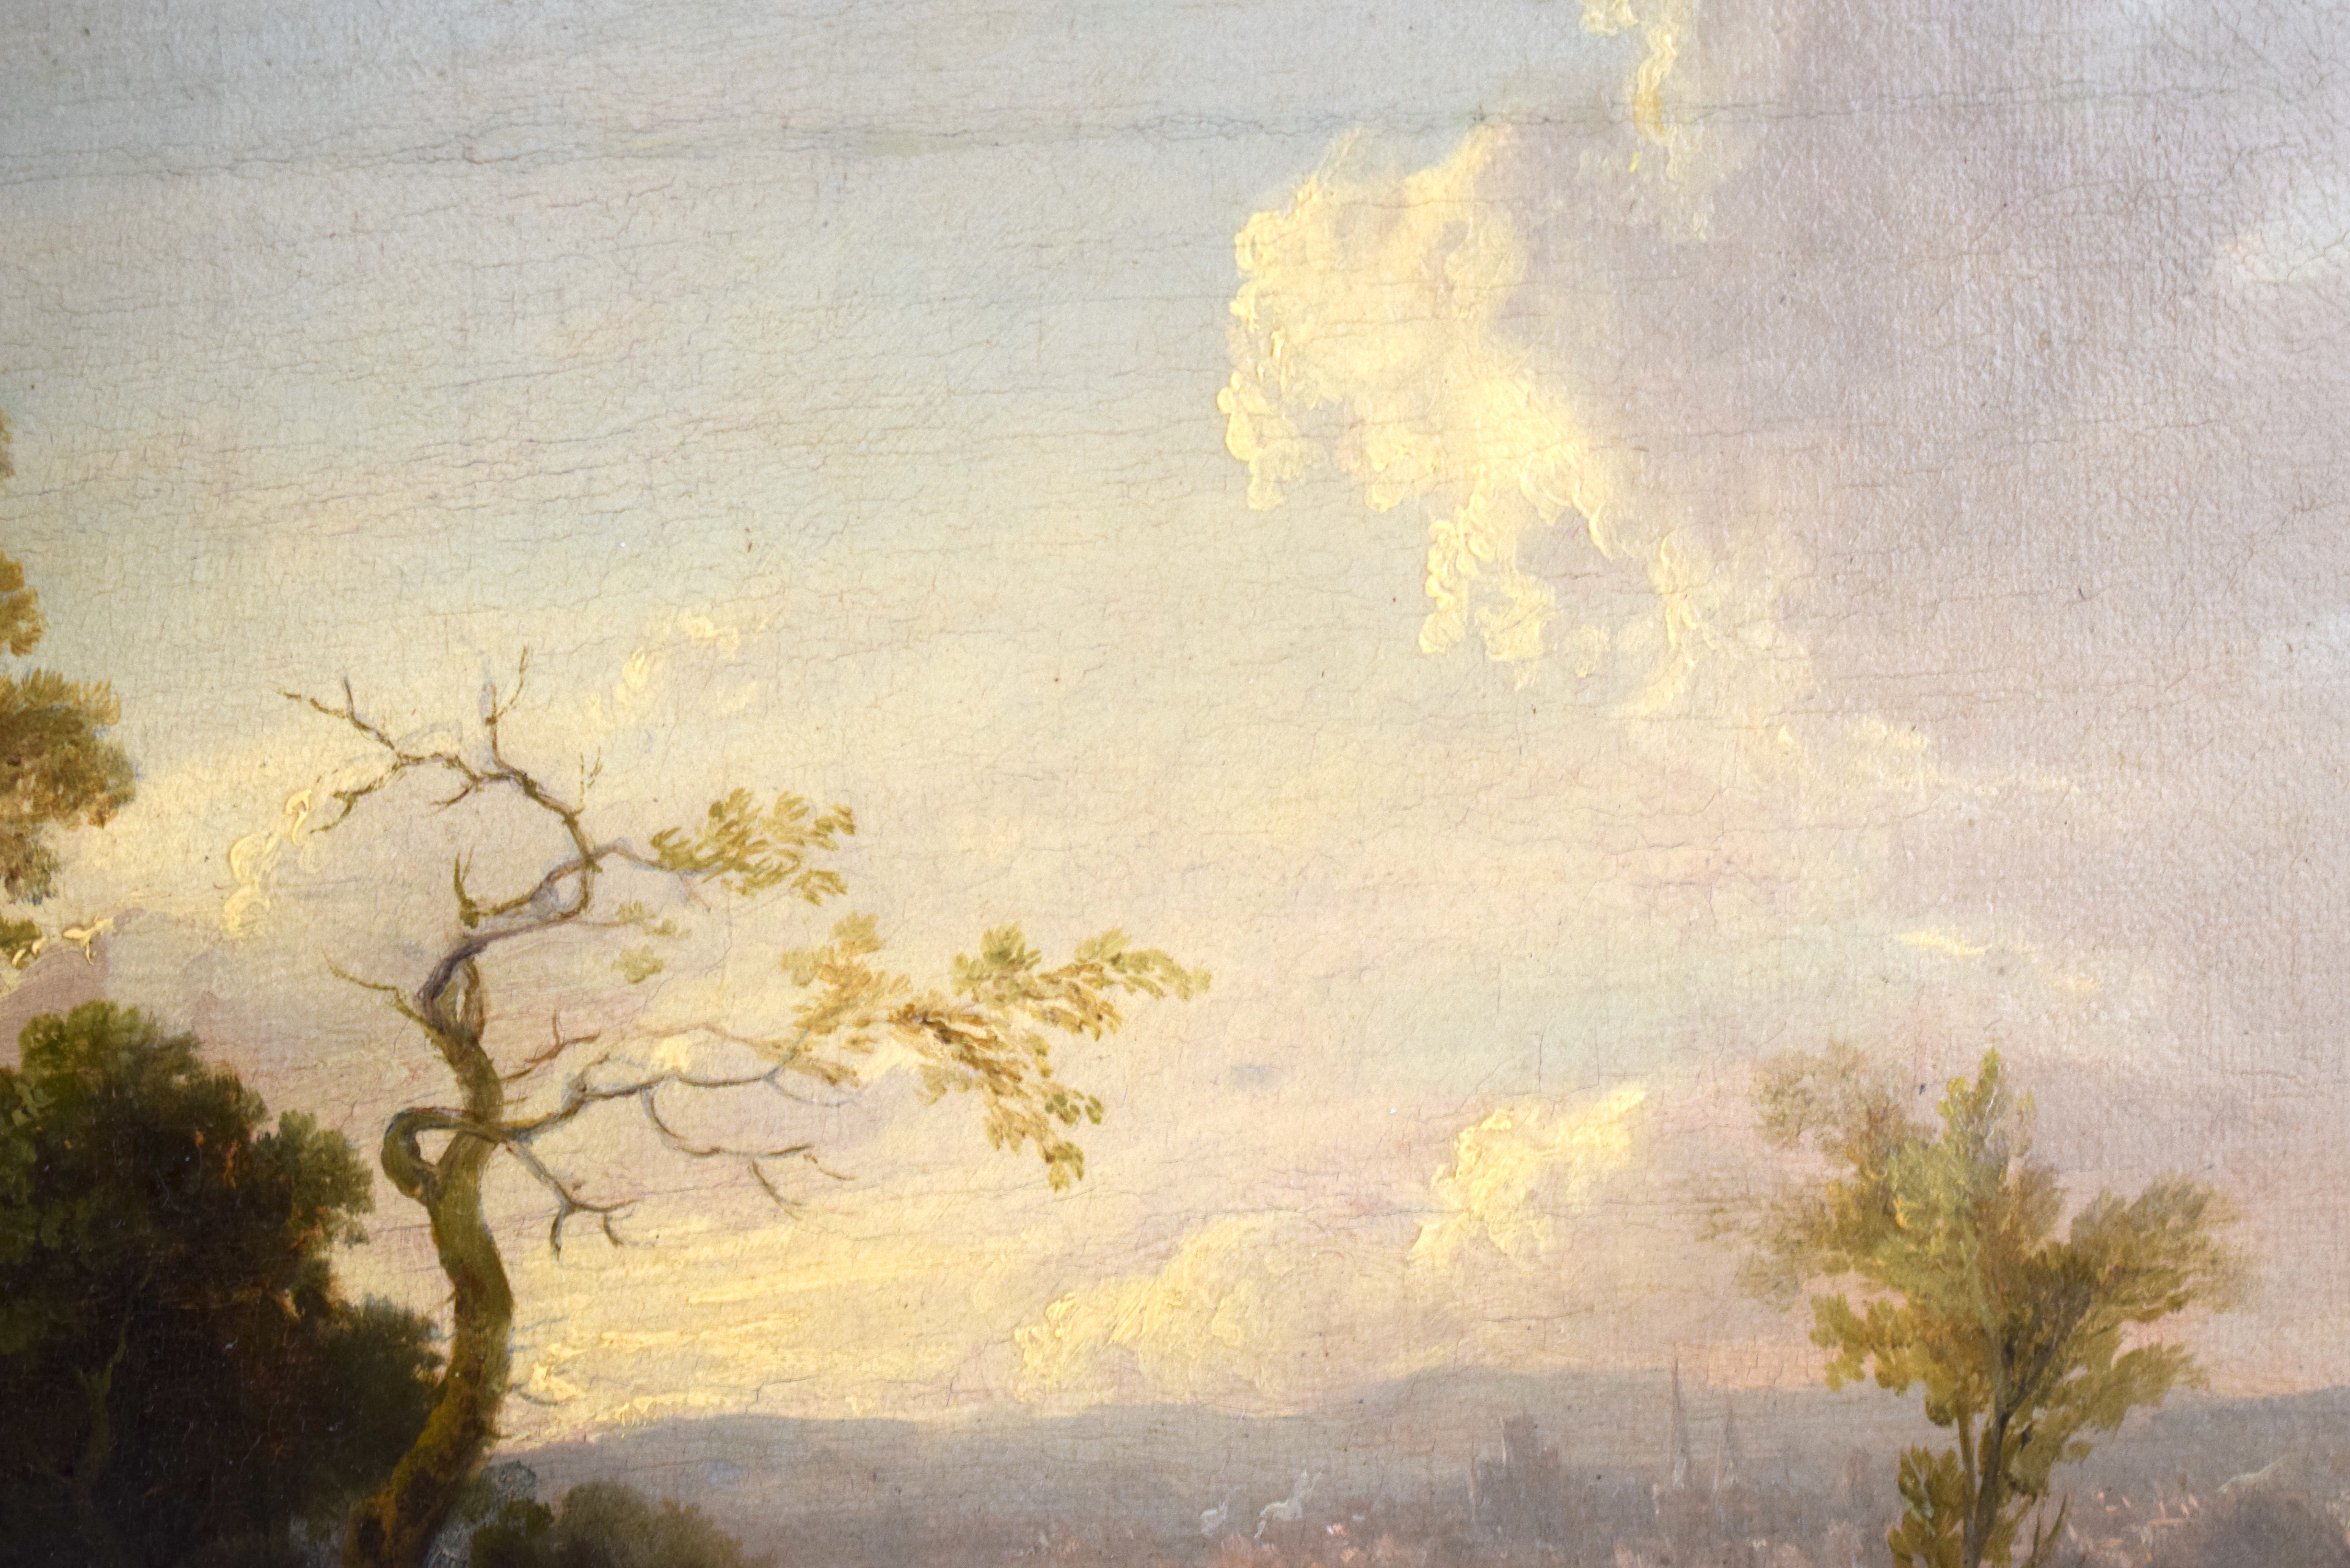 Alexander Nasmyth (1758-1840) Oil on board, Figures roaming within a landscape. Image 32 cm x 20 cm - Image 4 of 6